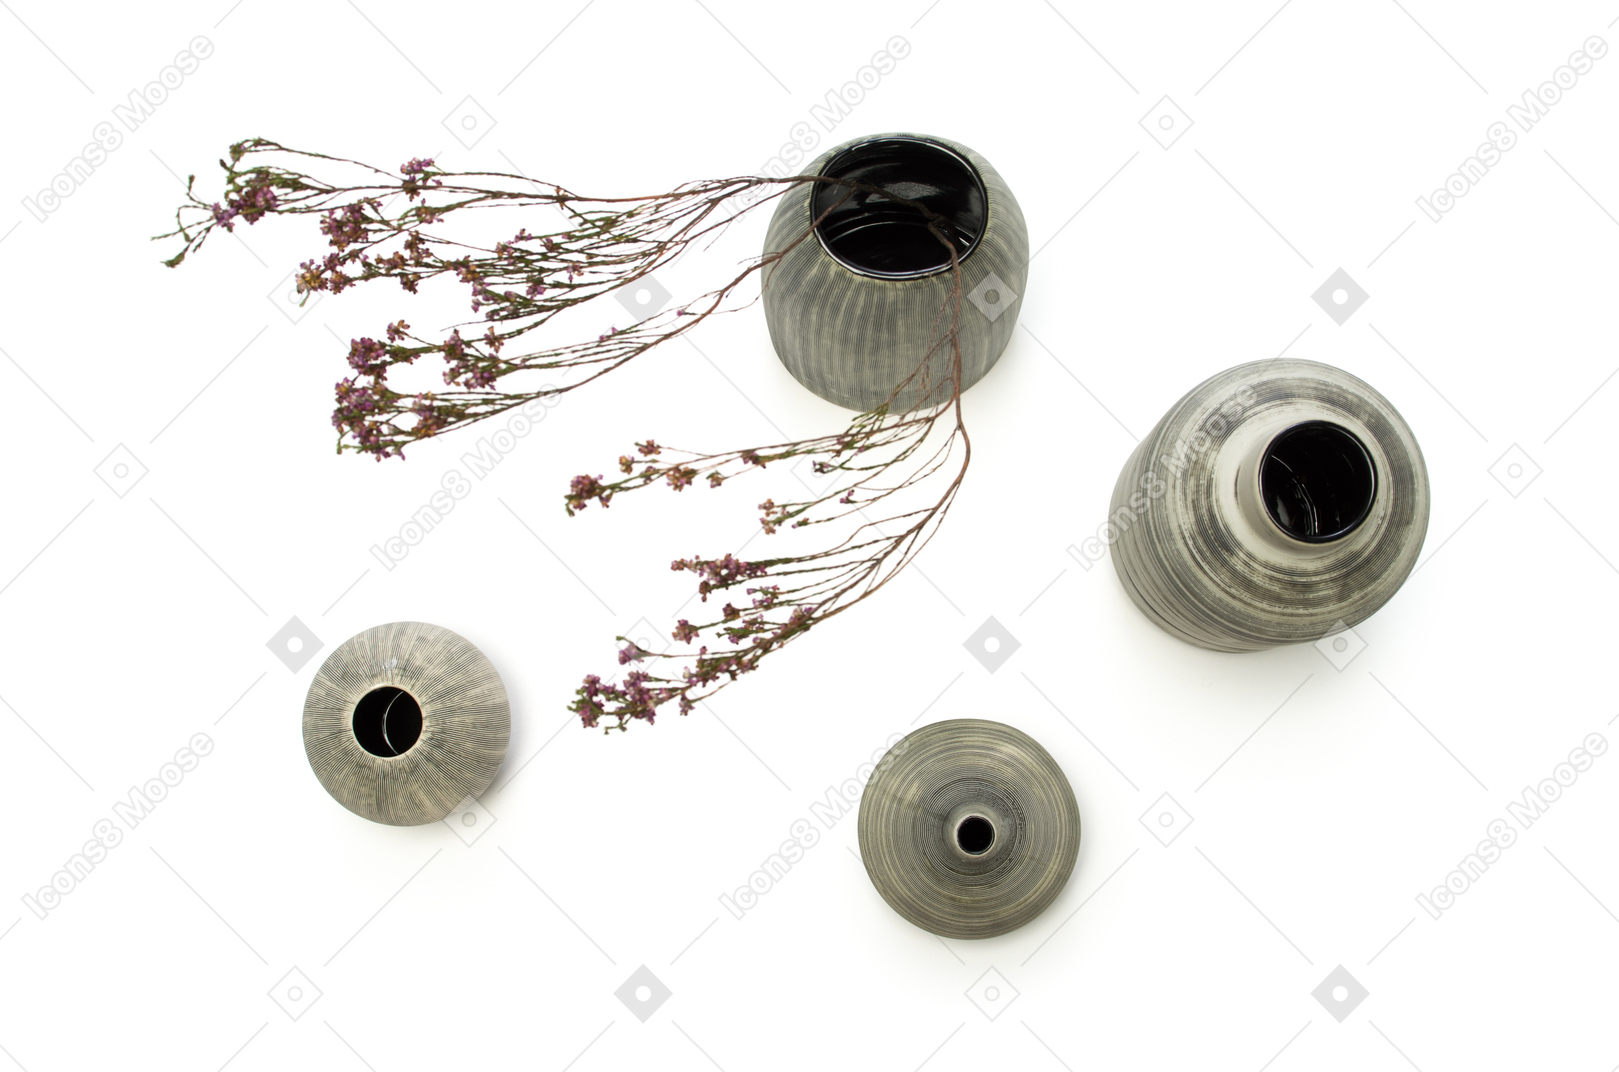 Quattro vasi con fiori secchi